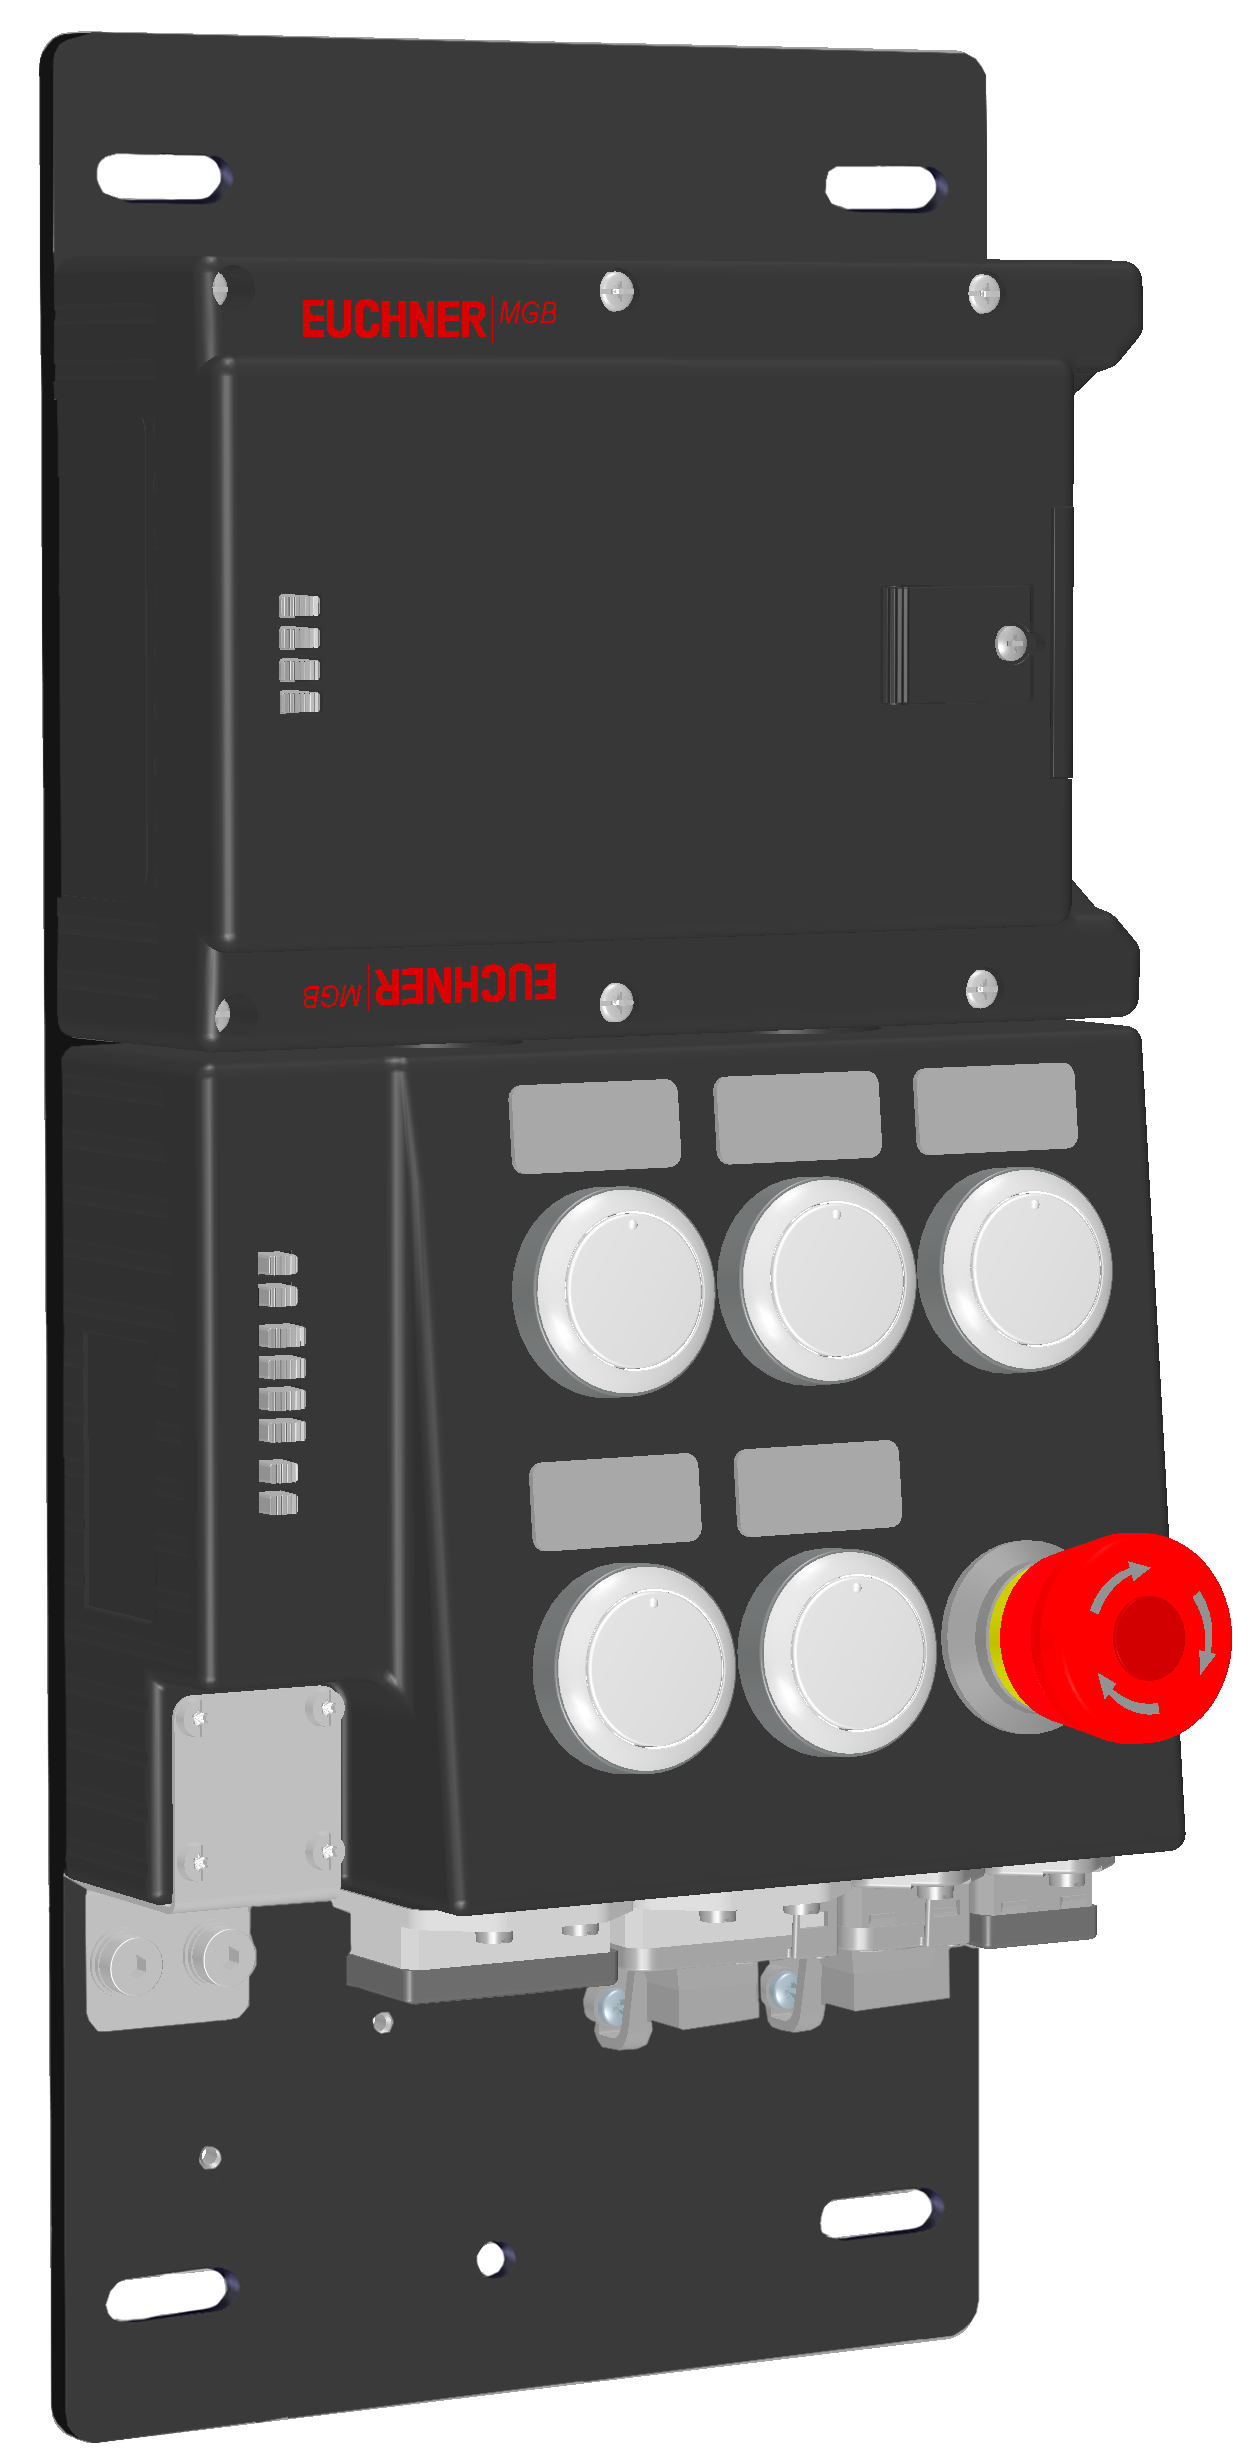 Locking modules MGB-L2B-PNA-R-121836  (Order no. 121836)